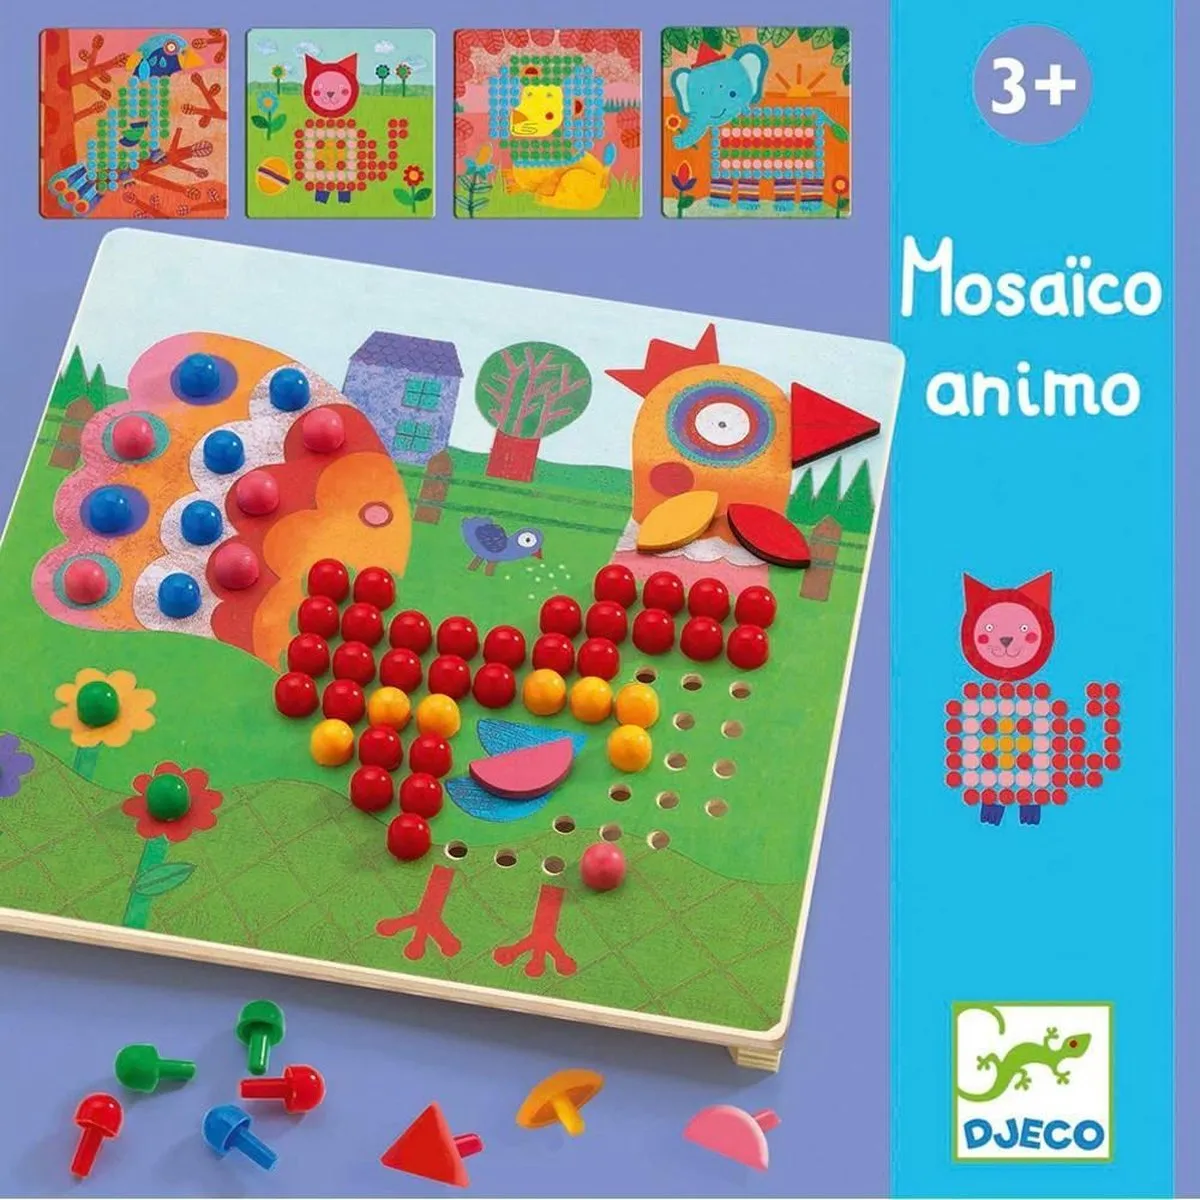 Djeco - Mosaico Animo - 3+ speelgoed